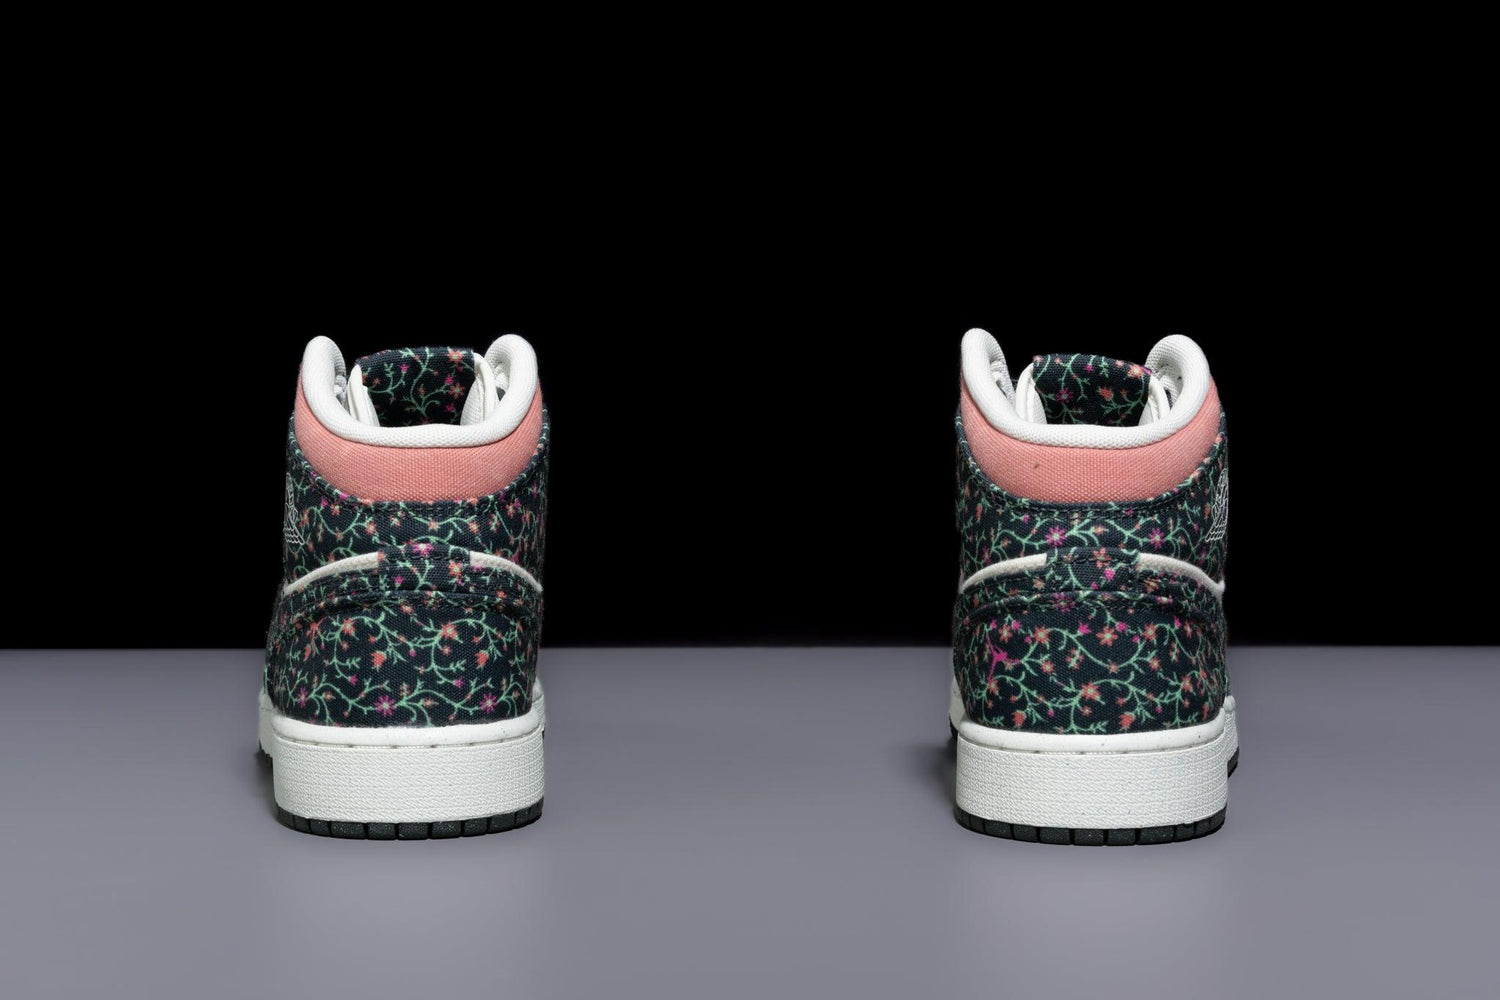 Better OG Air Jordan Retro SE GS "Floral Canvas" - Urlfreeze Shop